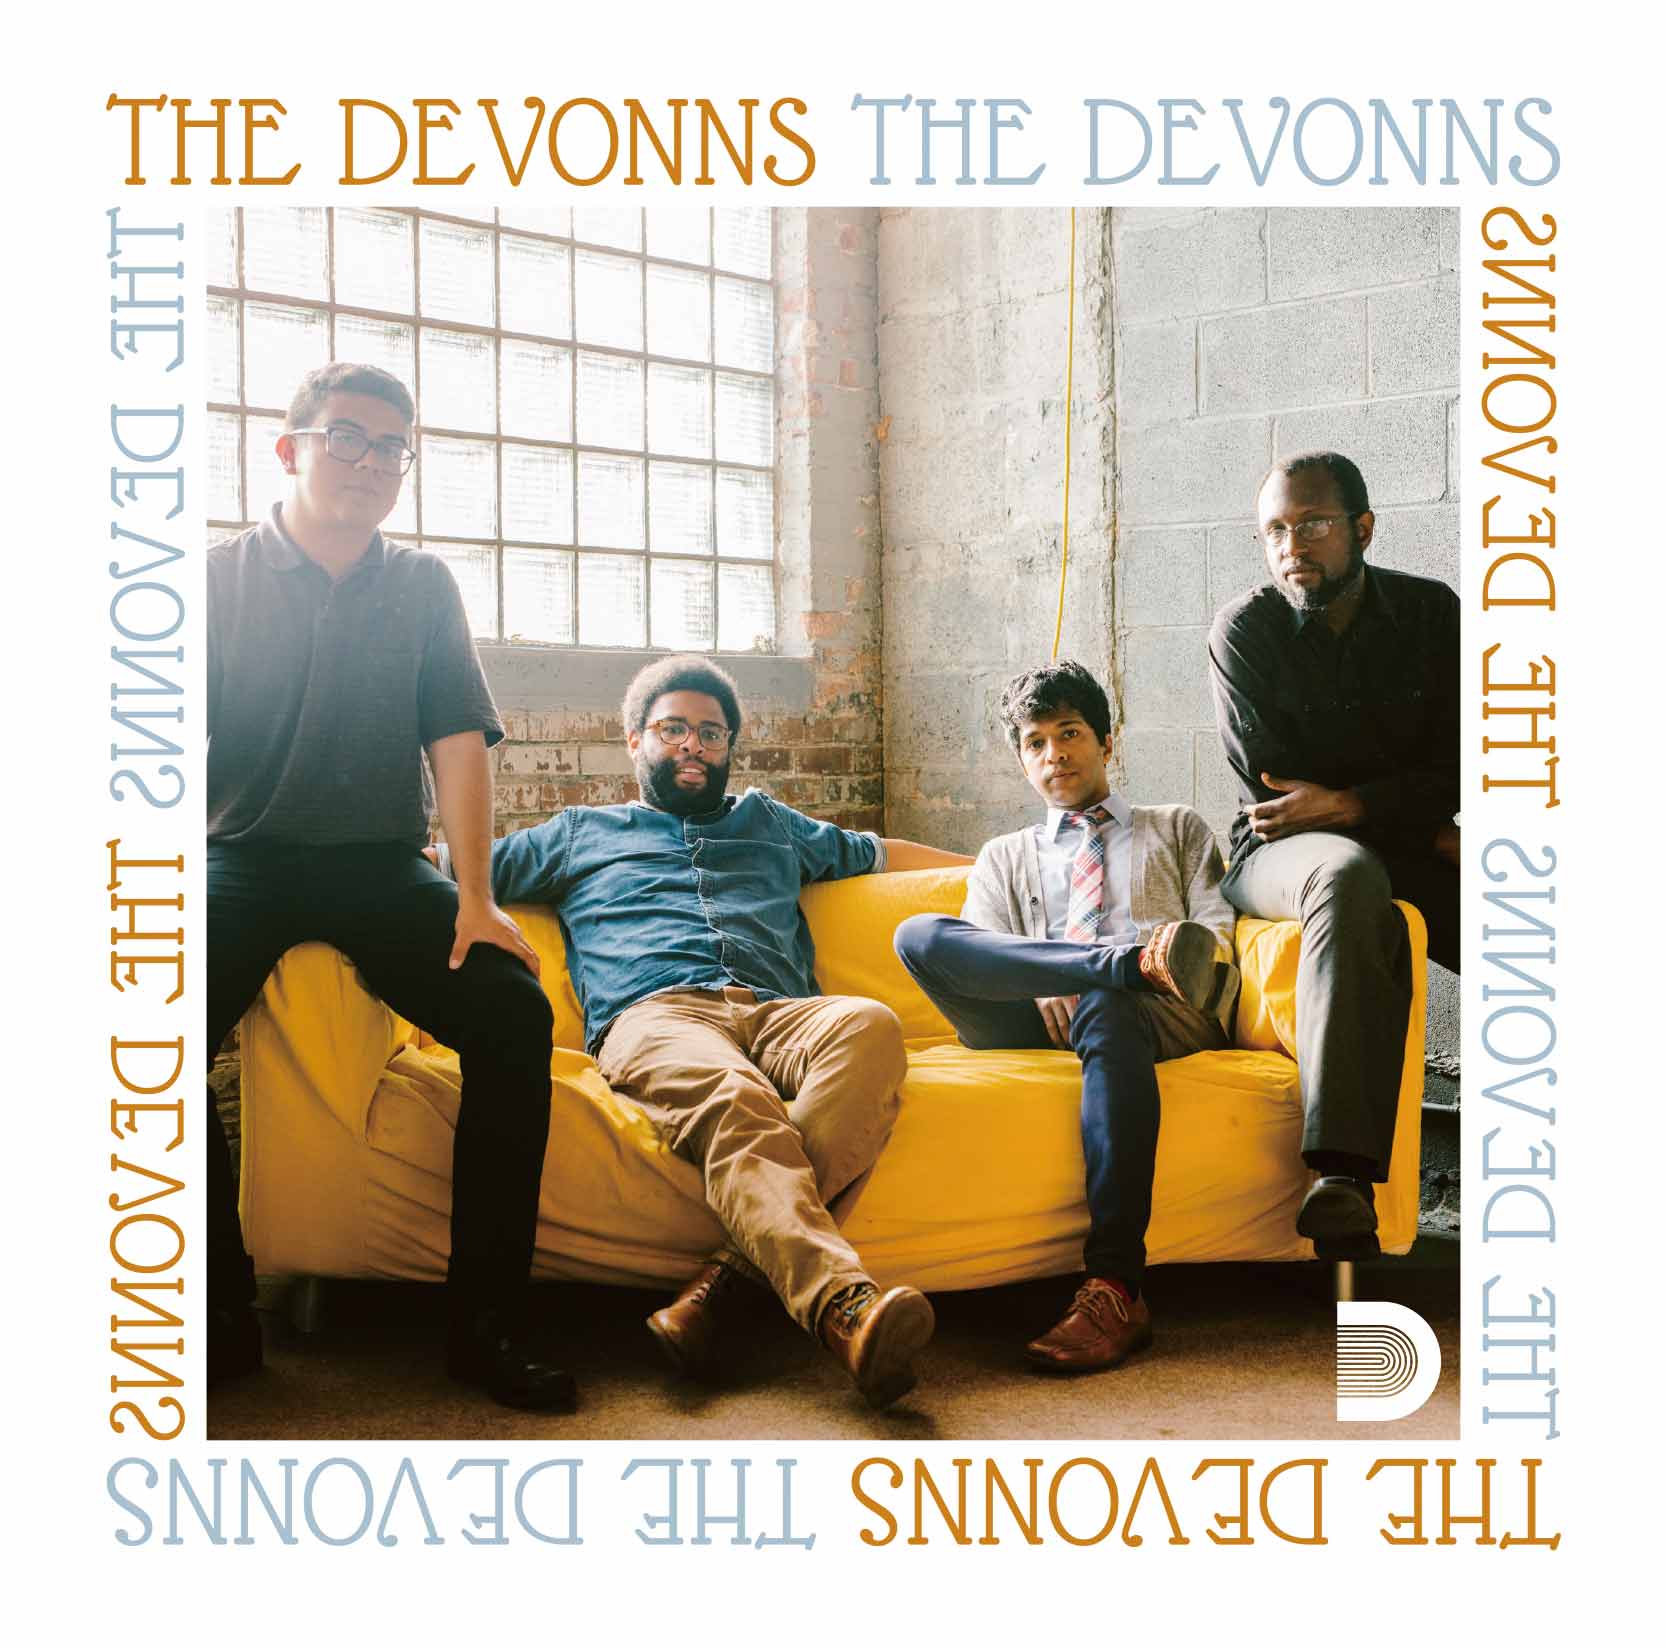 The Devonns